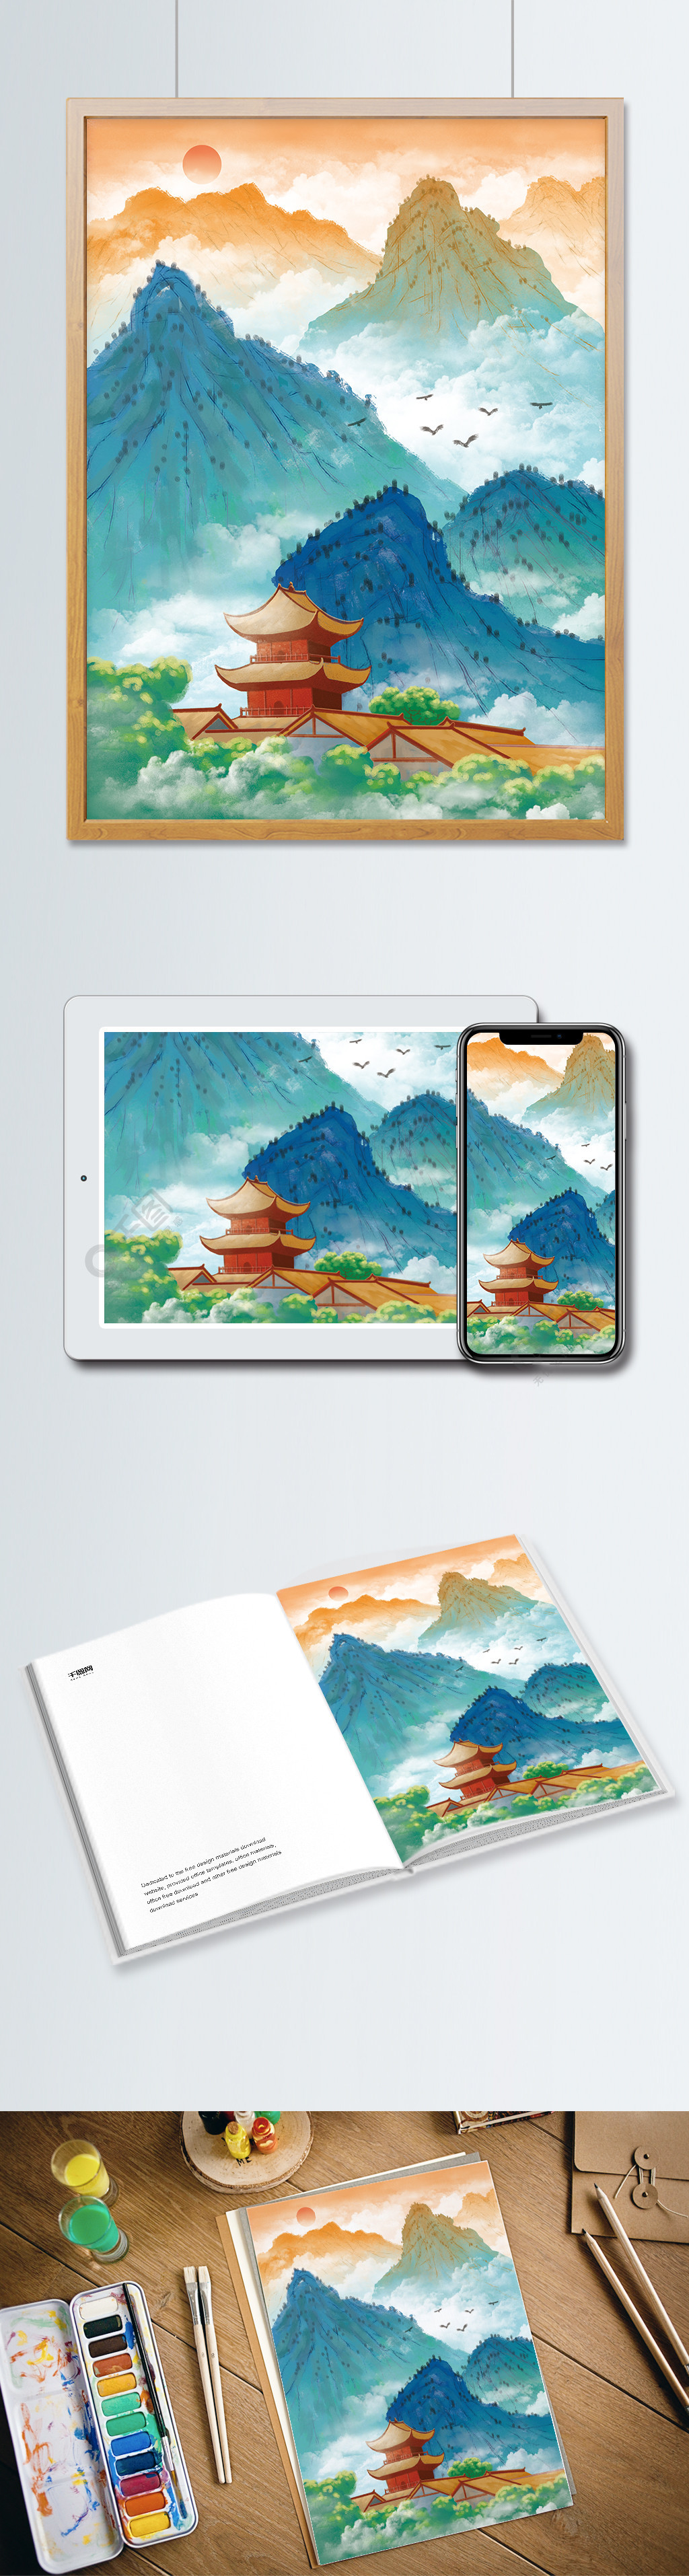 原创古风山水楼阁插画中国风青绿山水风景画1年前发布